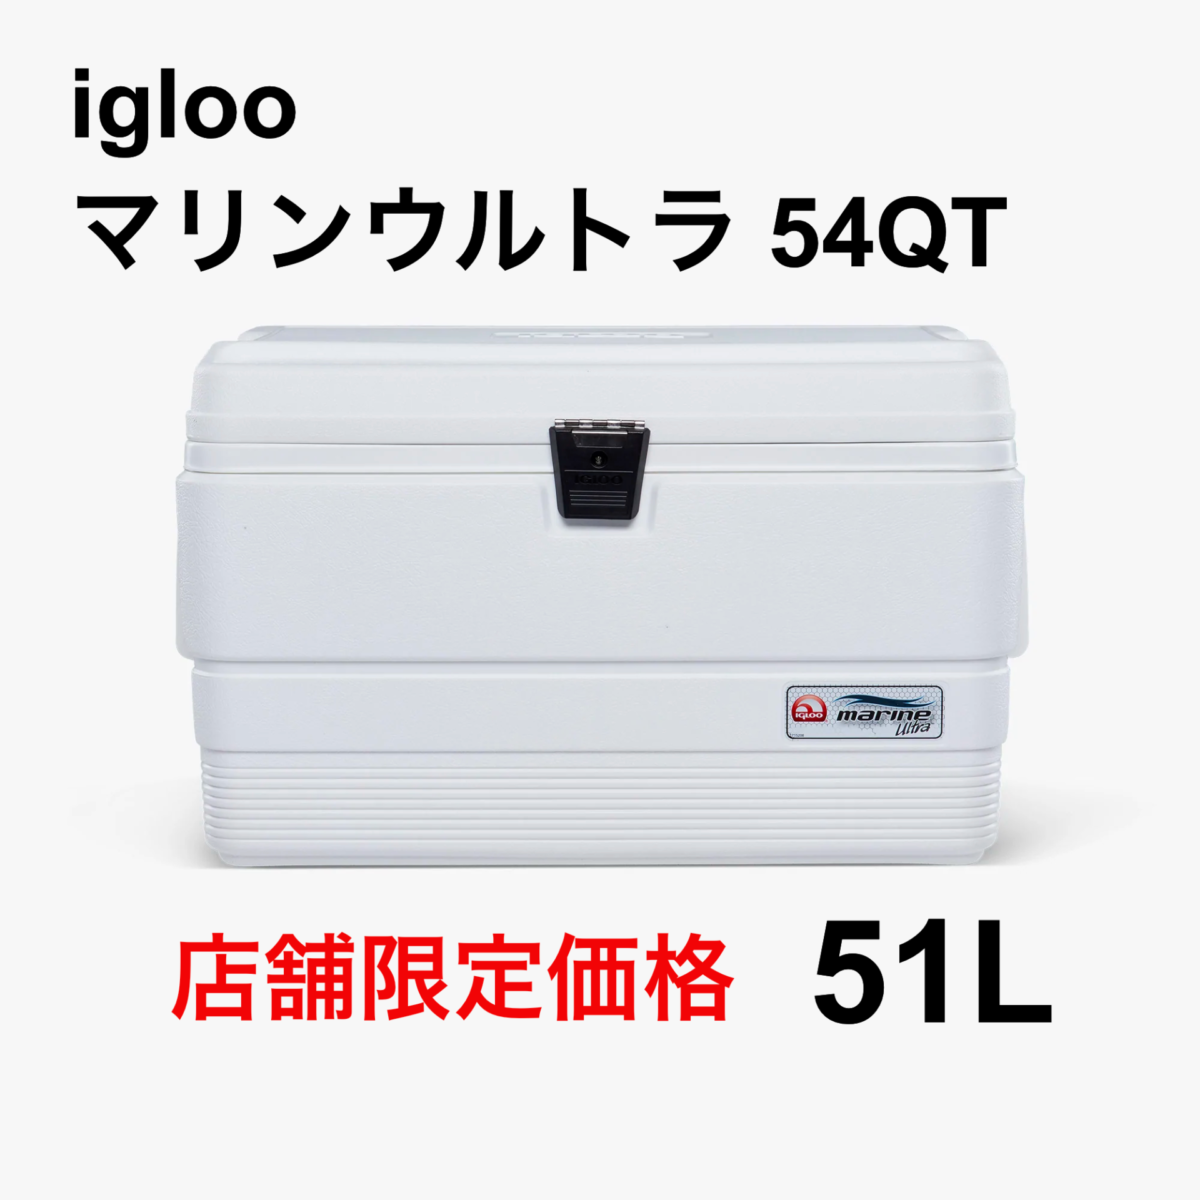 igloo(イグロー/イグルー) マリンウルトラ 94QT(88L)